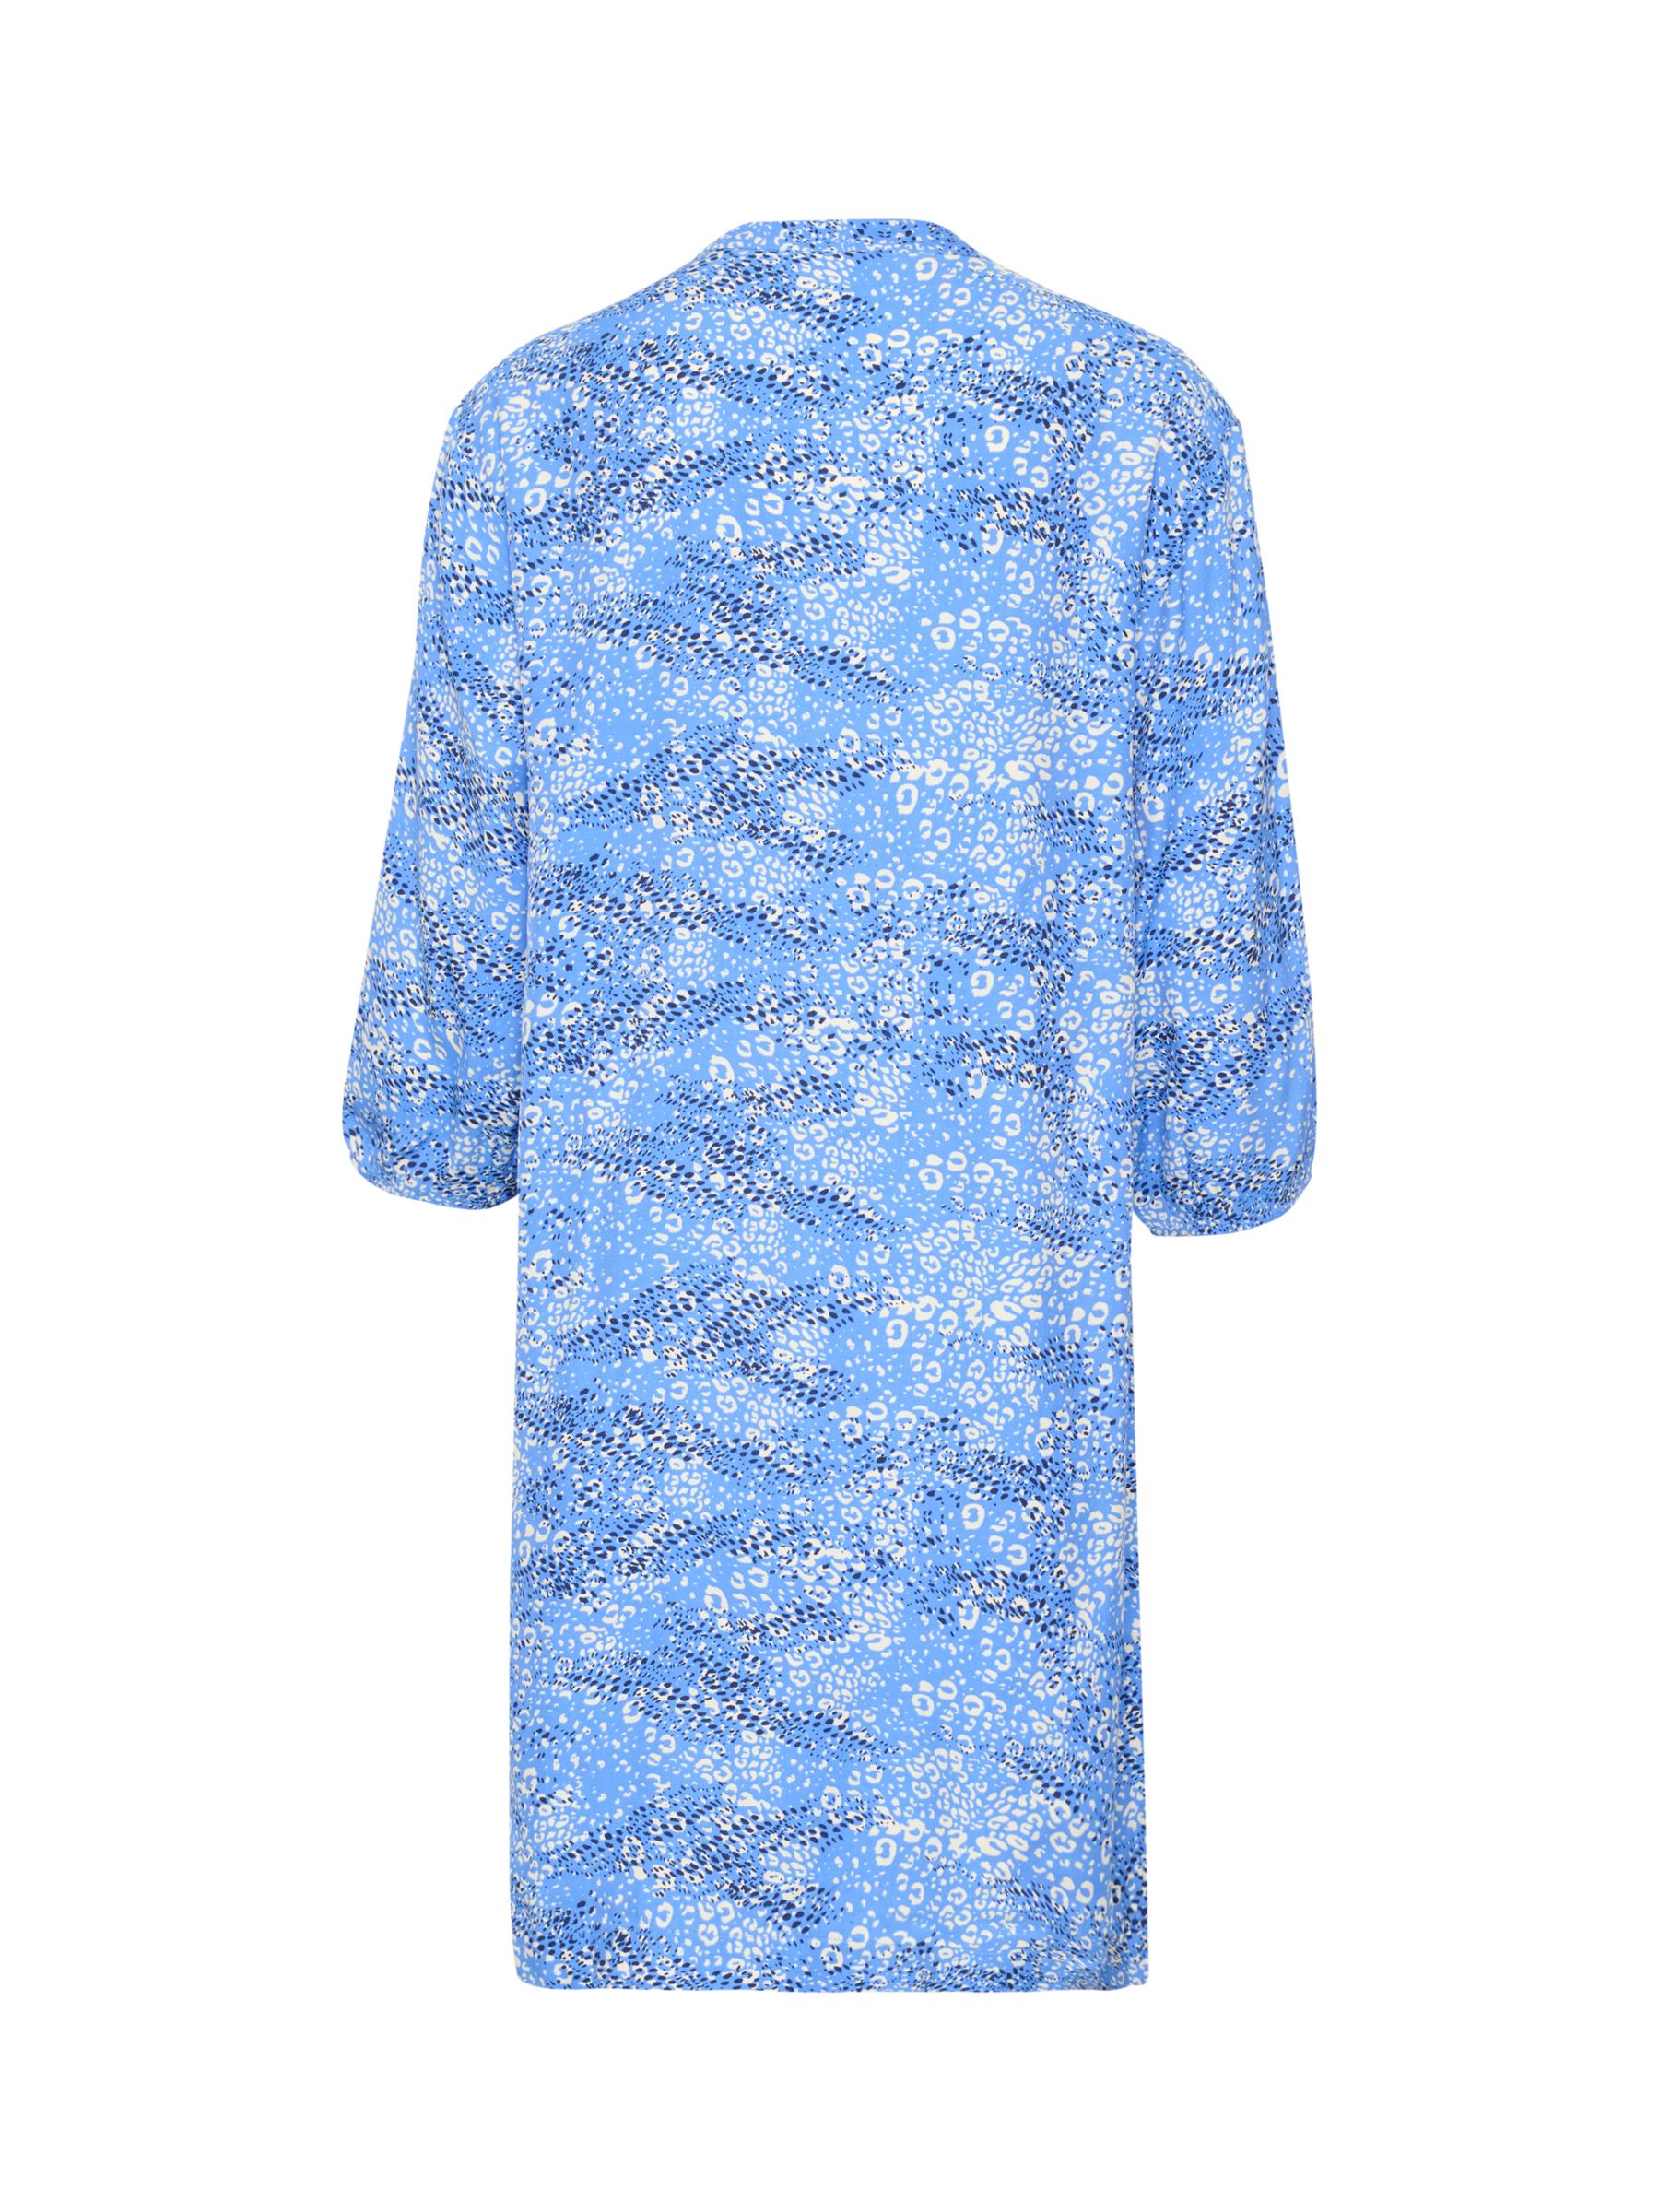 Saint Tropez Dacia Leopard Print Dress, Ultramarine, M